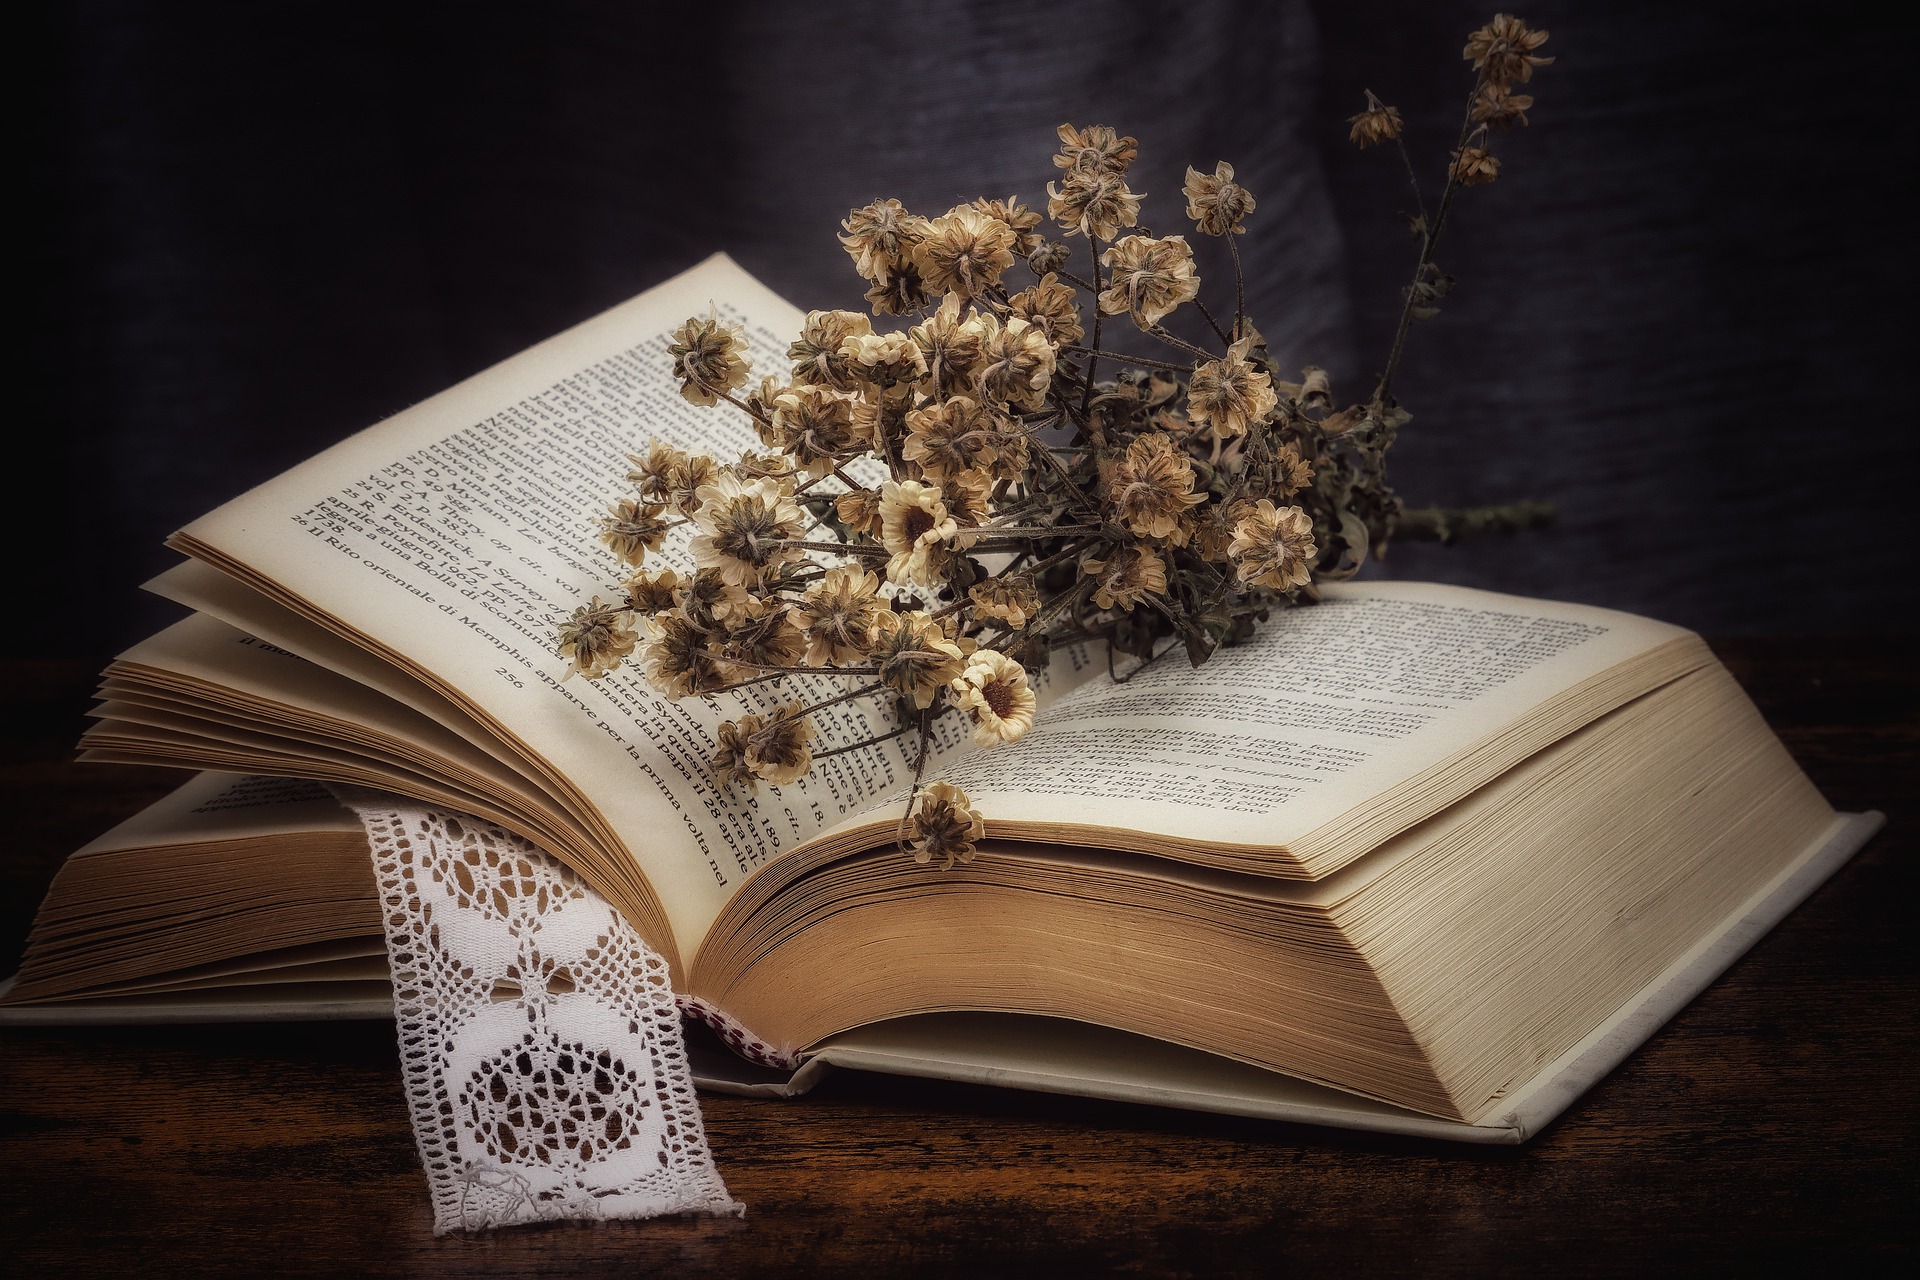 Tại sao những “mọt sách” luôn thích đọc sách giấy truyền thống?